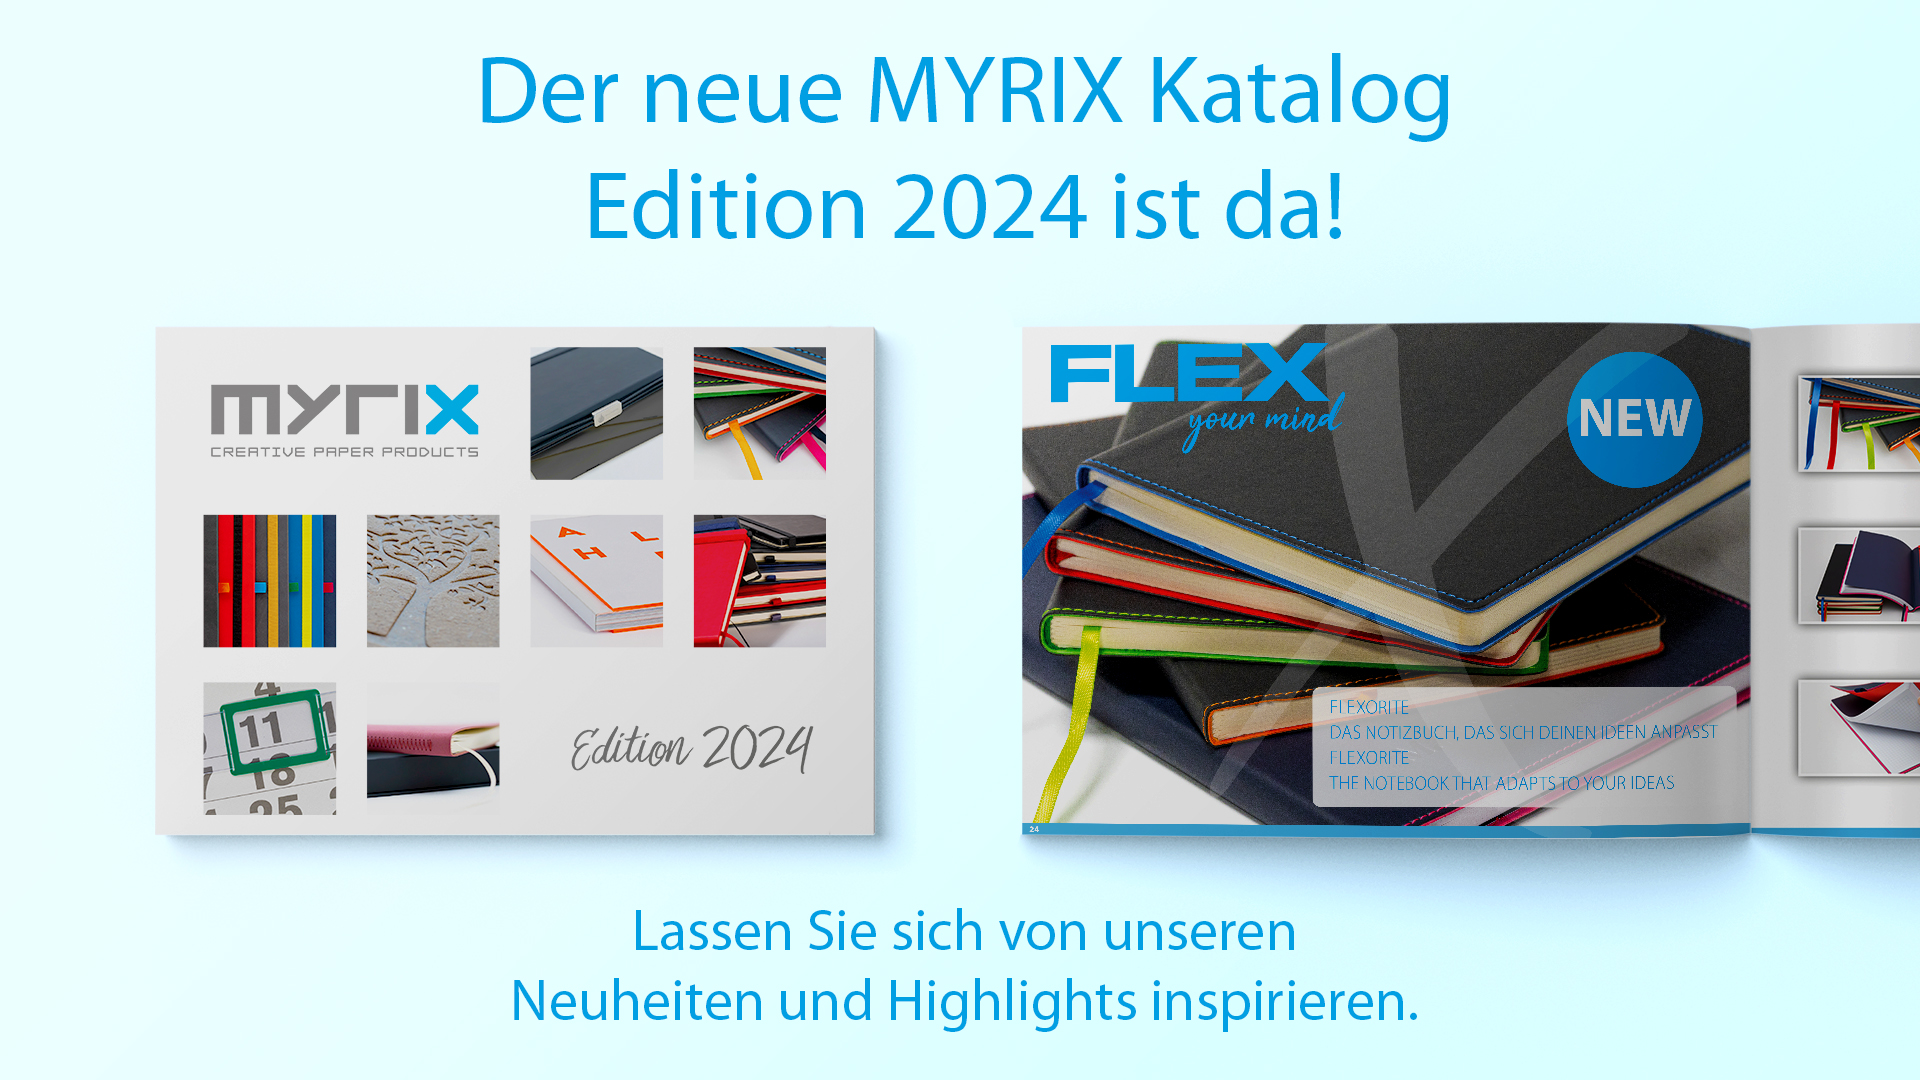 MYRIX Katalog Edition 2024 ist da!